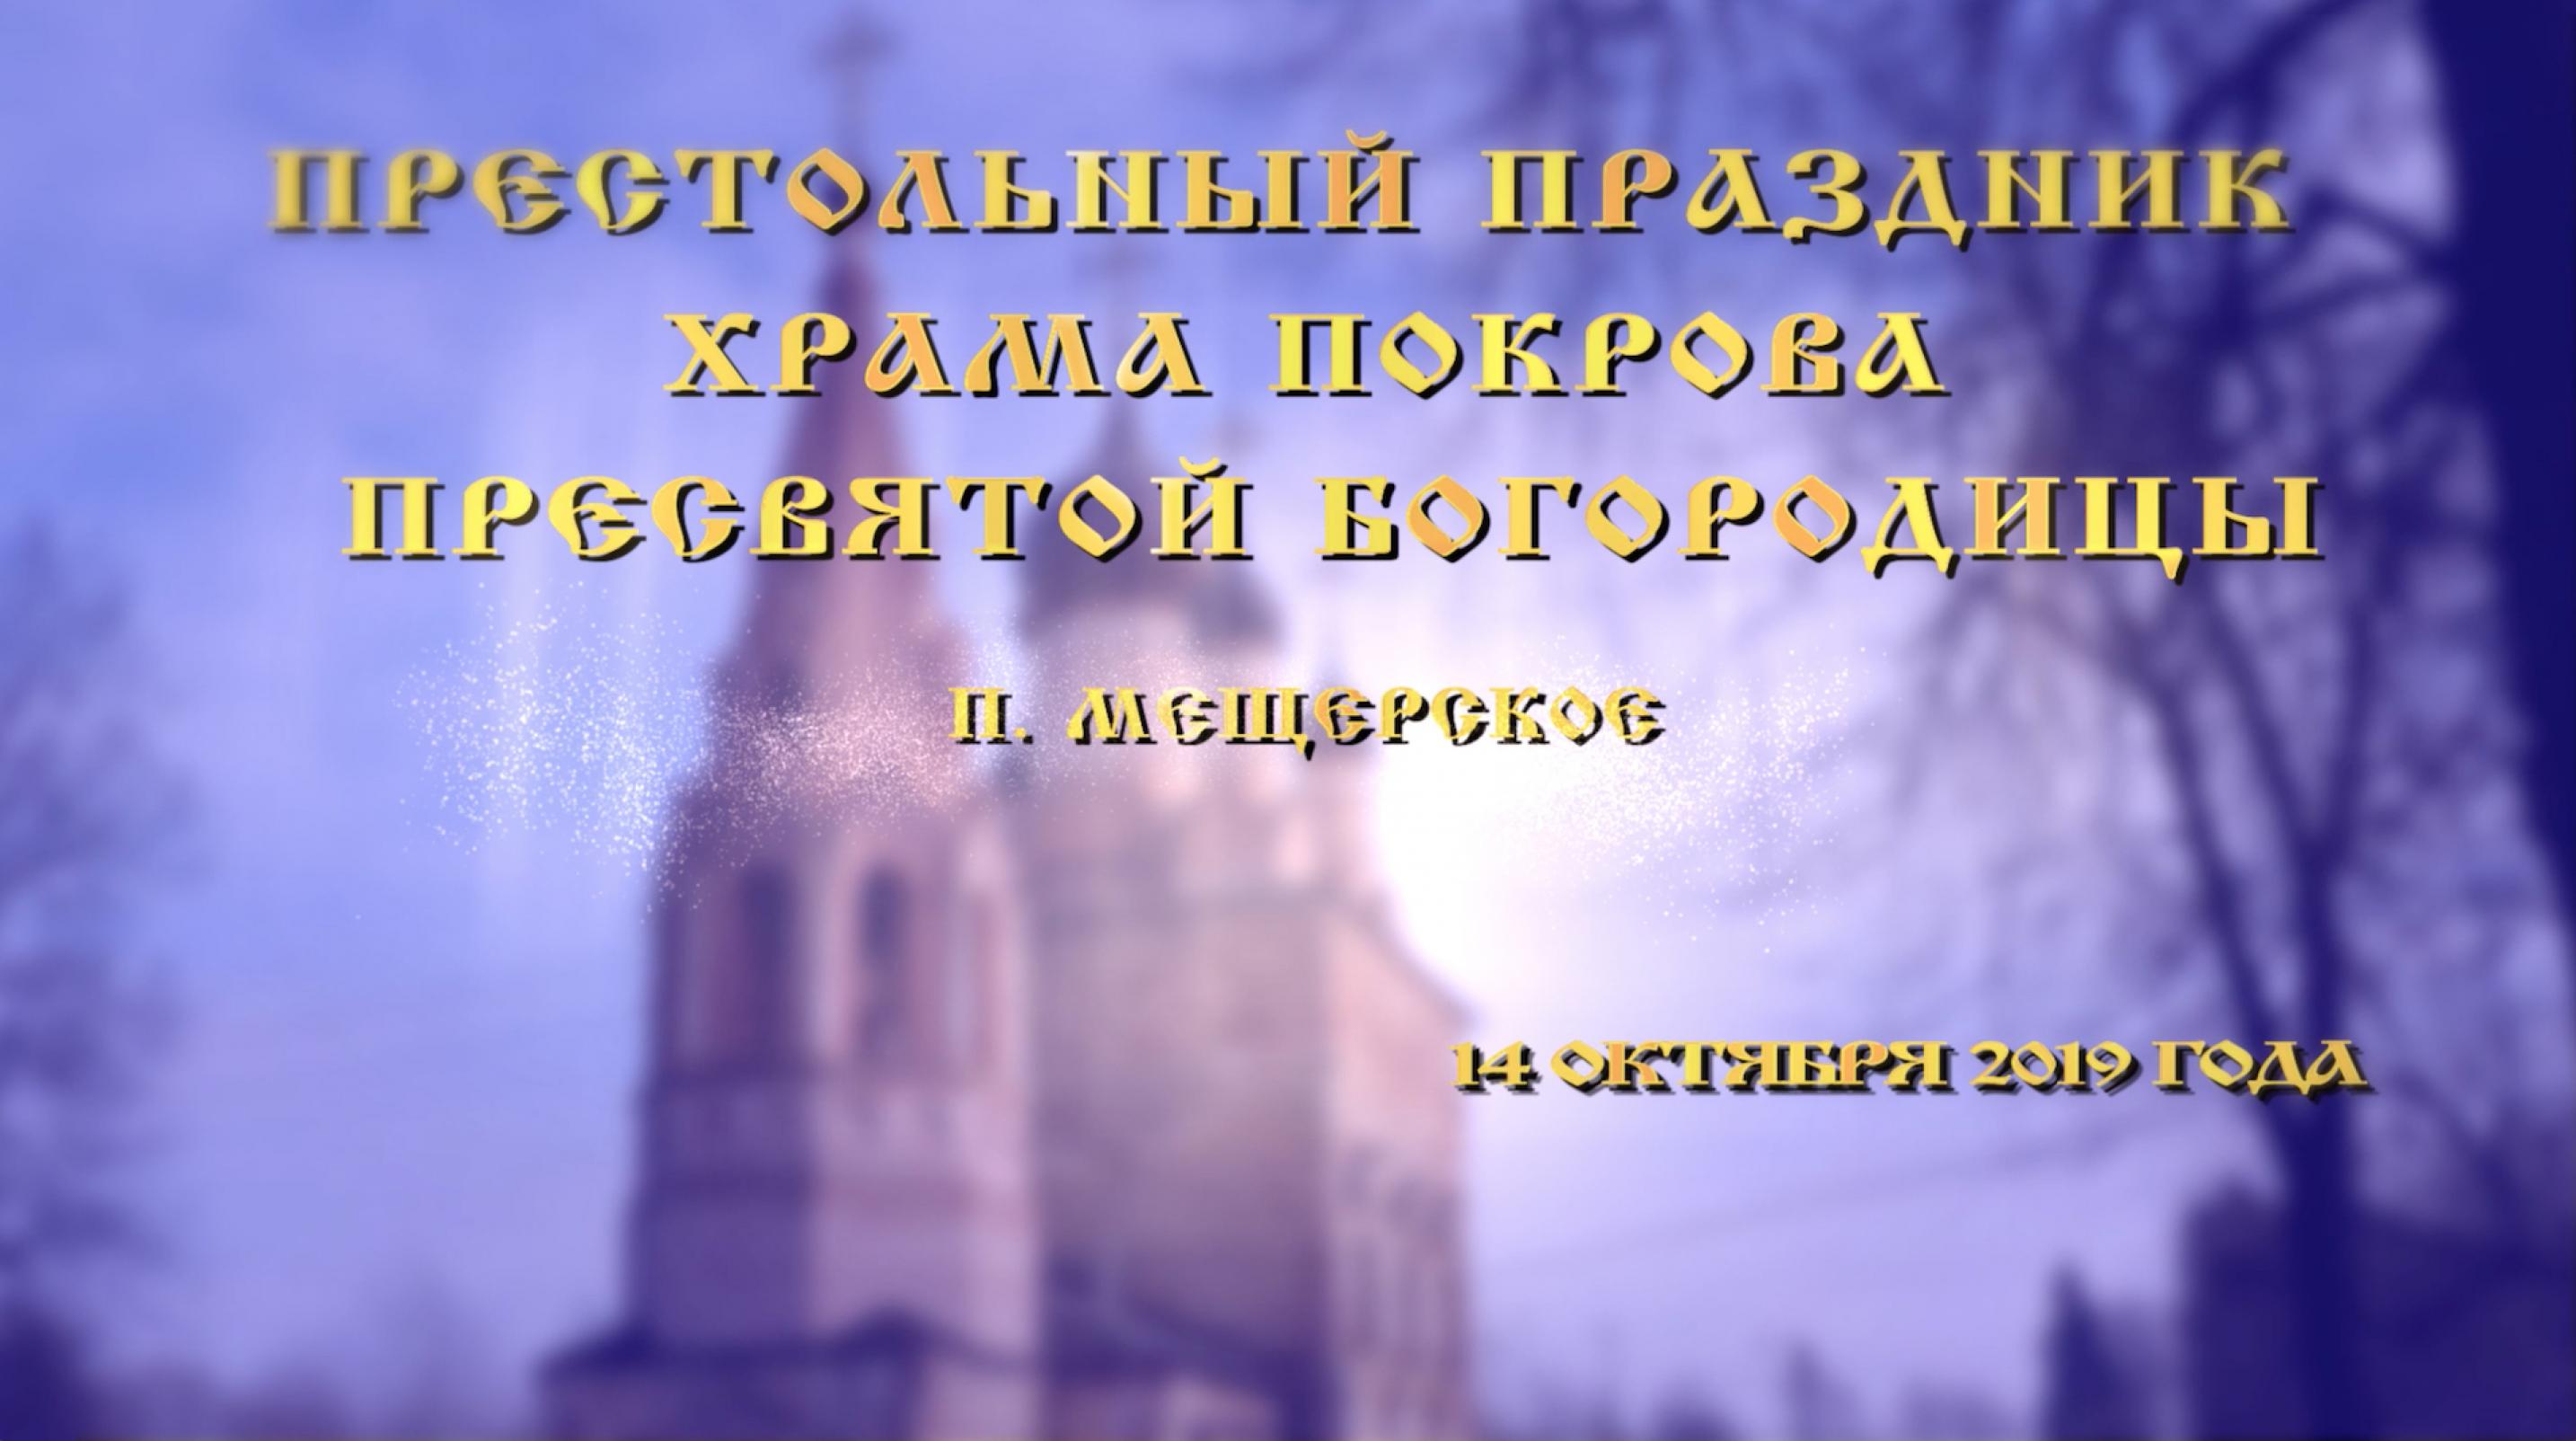 snimok_ekrana_2019-10-24_v_22.13.07_kopiya.jpg